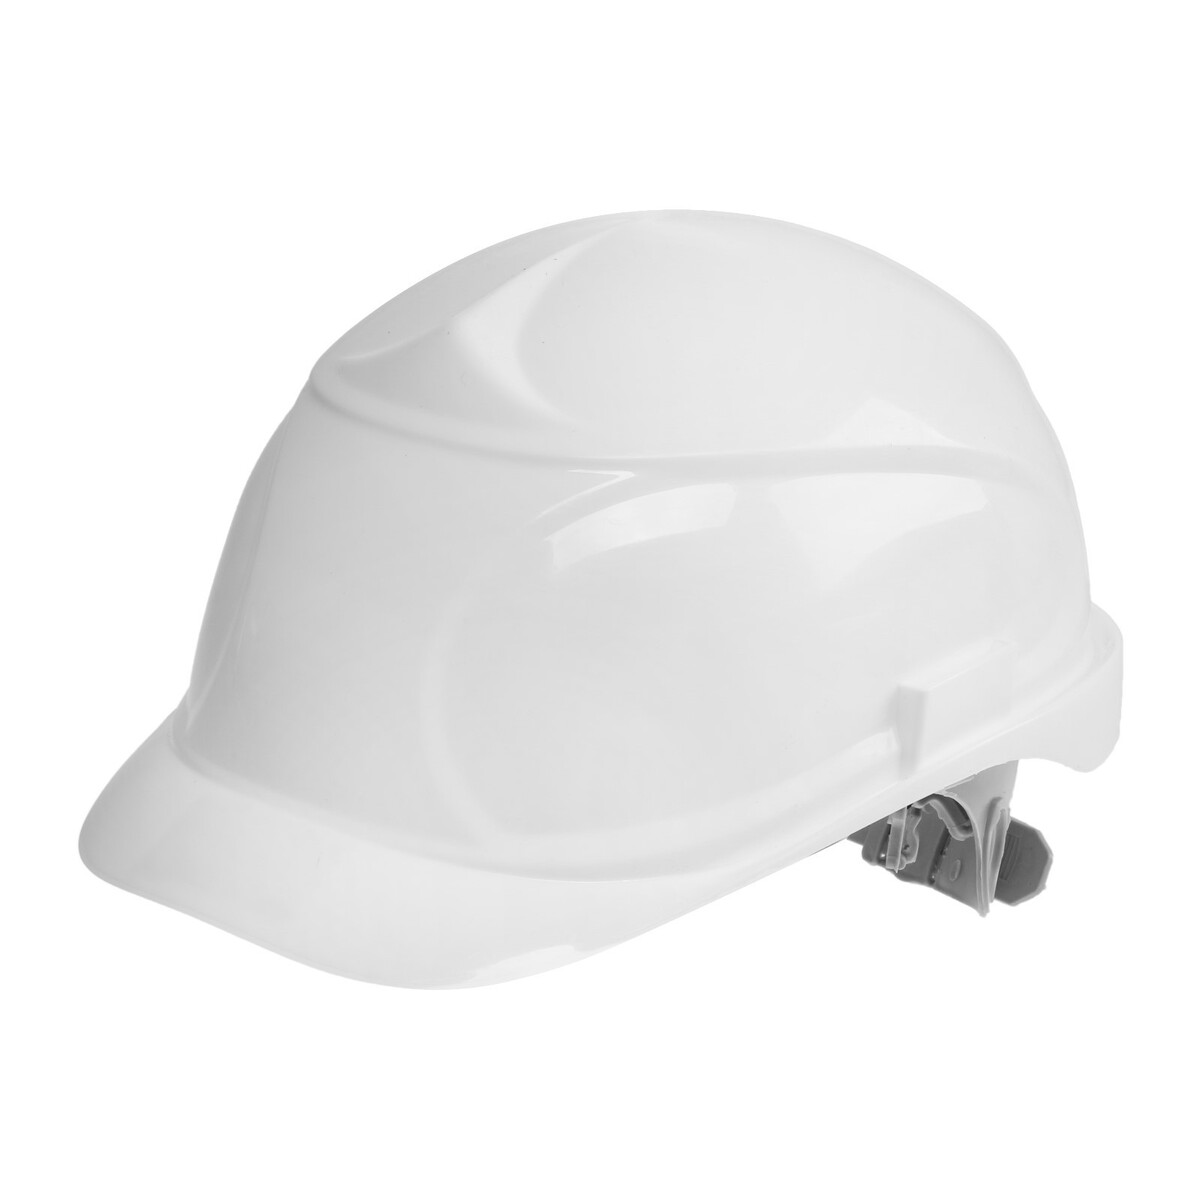 Каска защитная тундра, для строительно-монтажных работ, с пластиковым оголовьем, белая TUNDRA, цвет белый